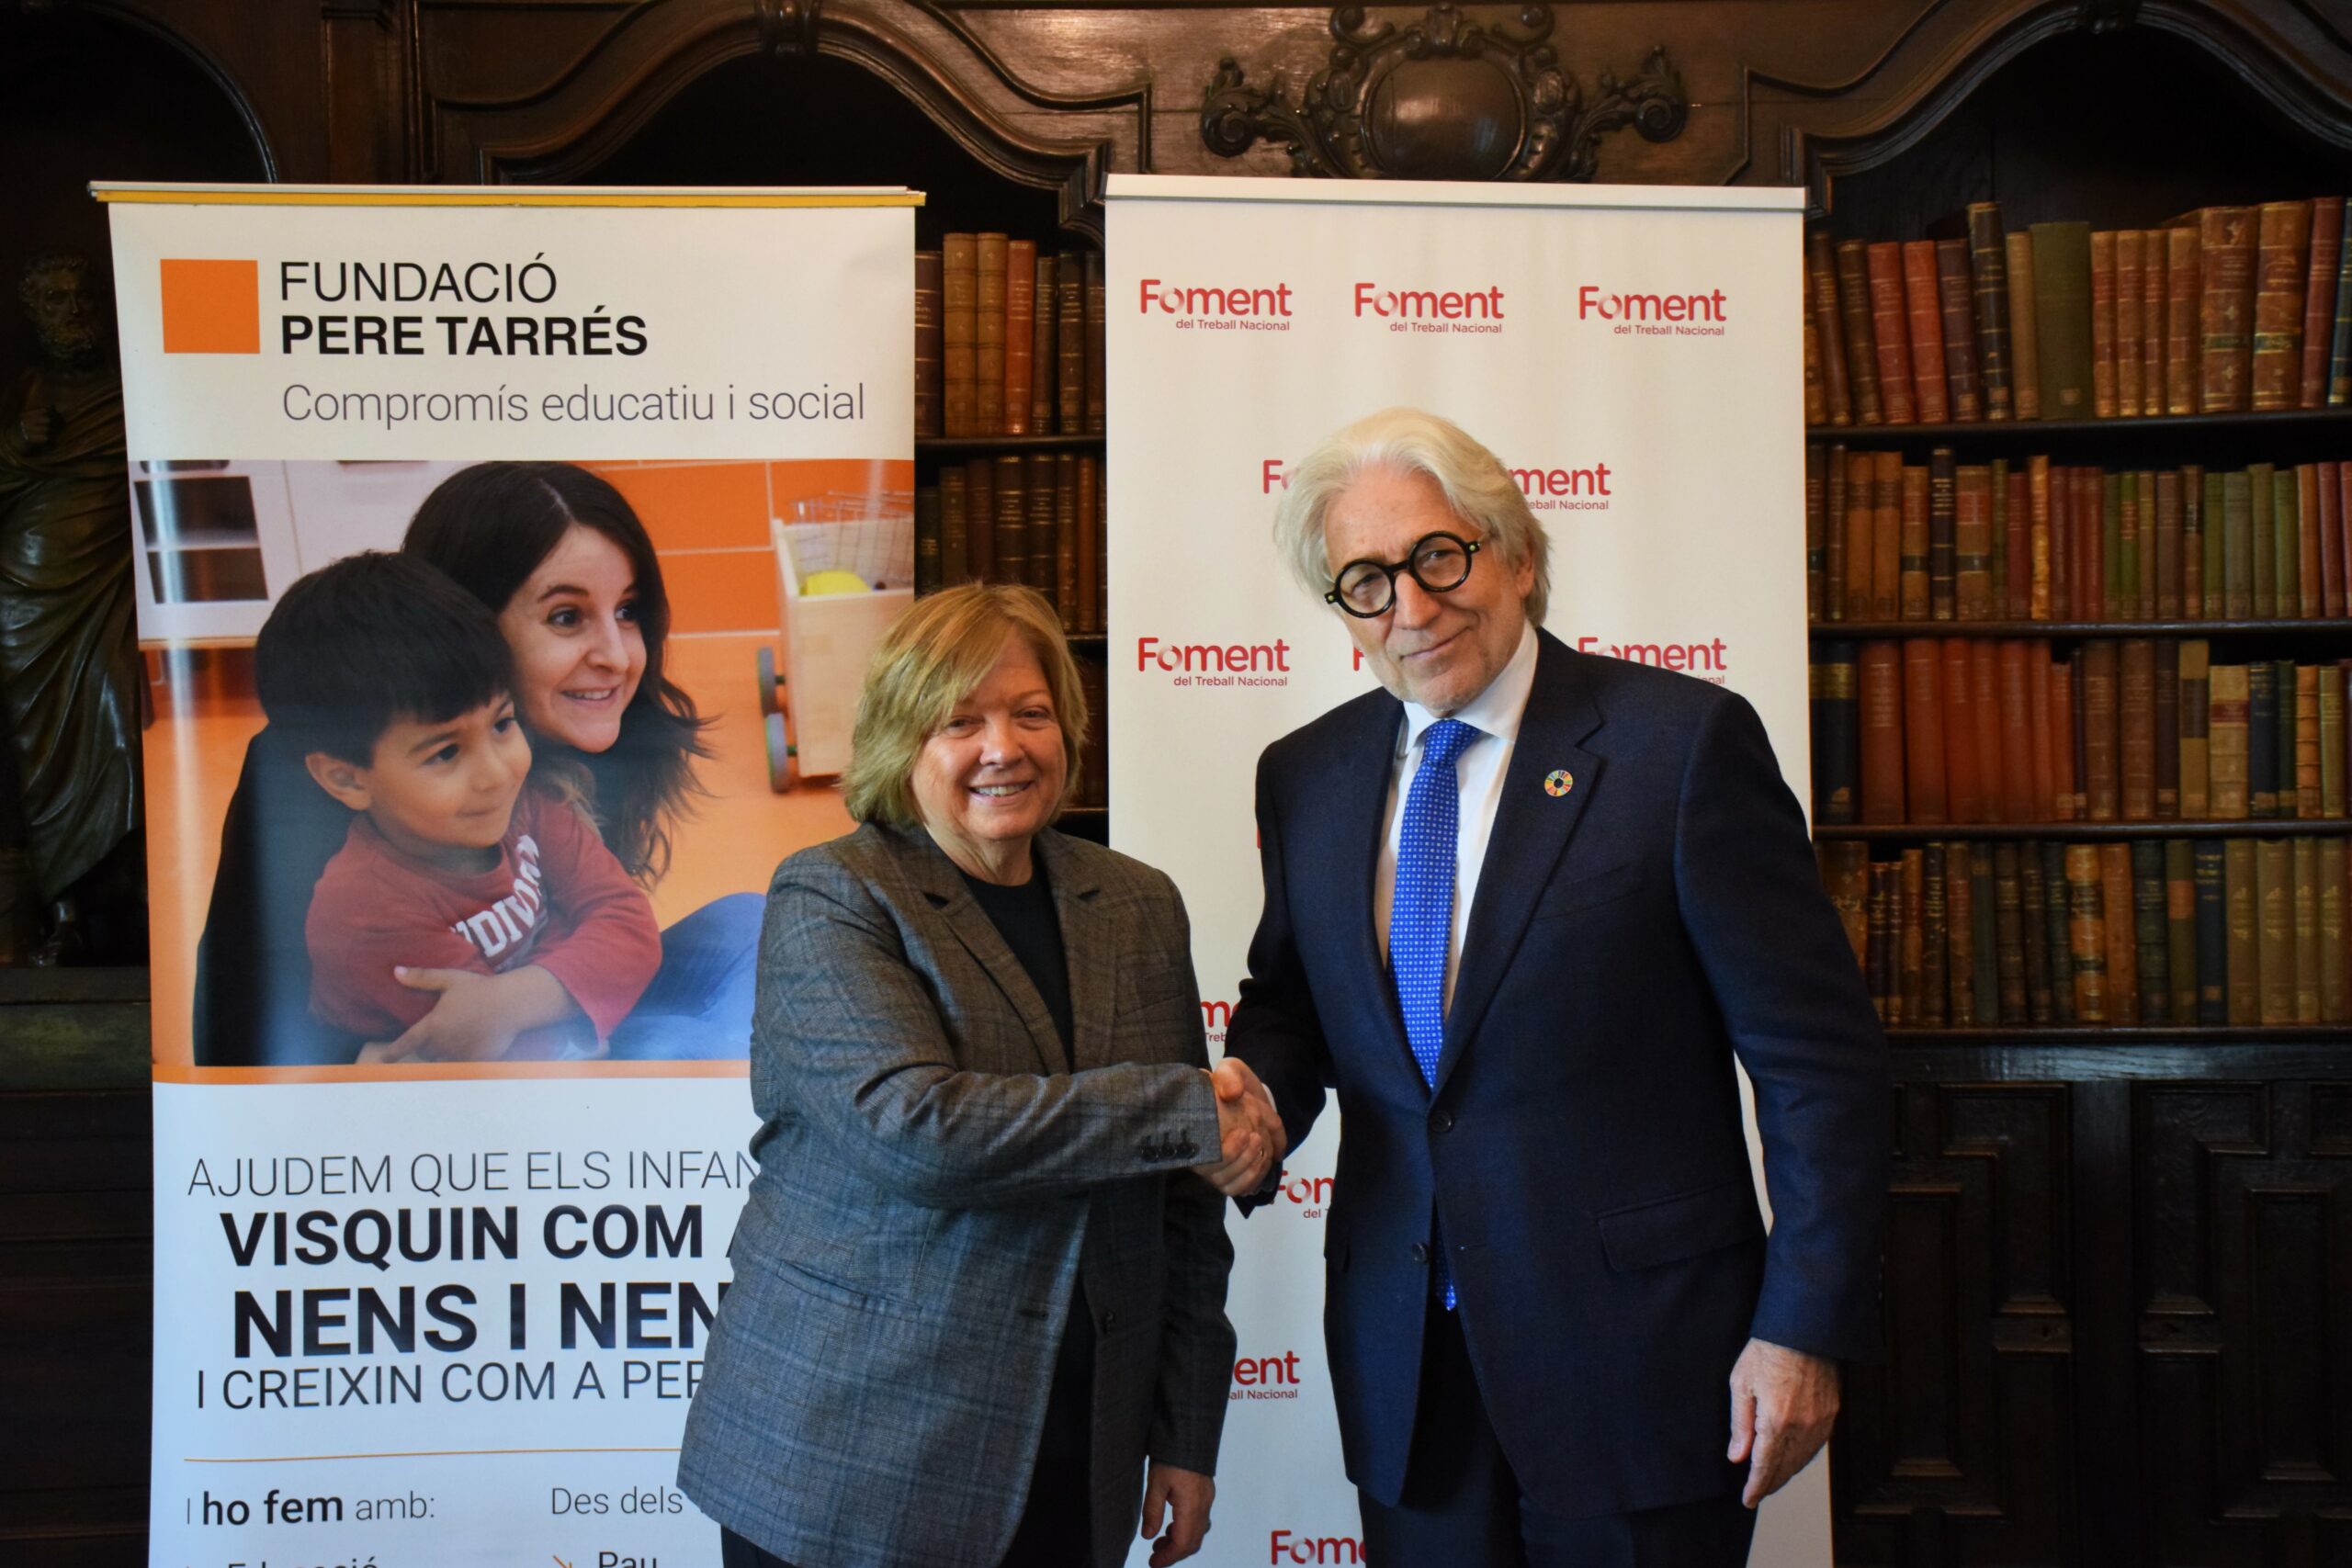 La Fundación Pere Tarrés y Foment firman un convenio para contribuir al bienestar de los niños en situación vulnerable